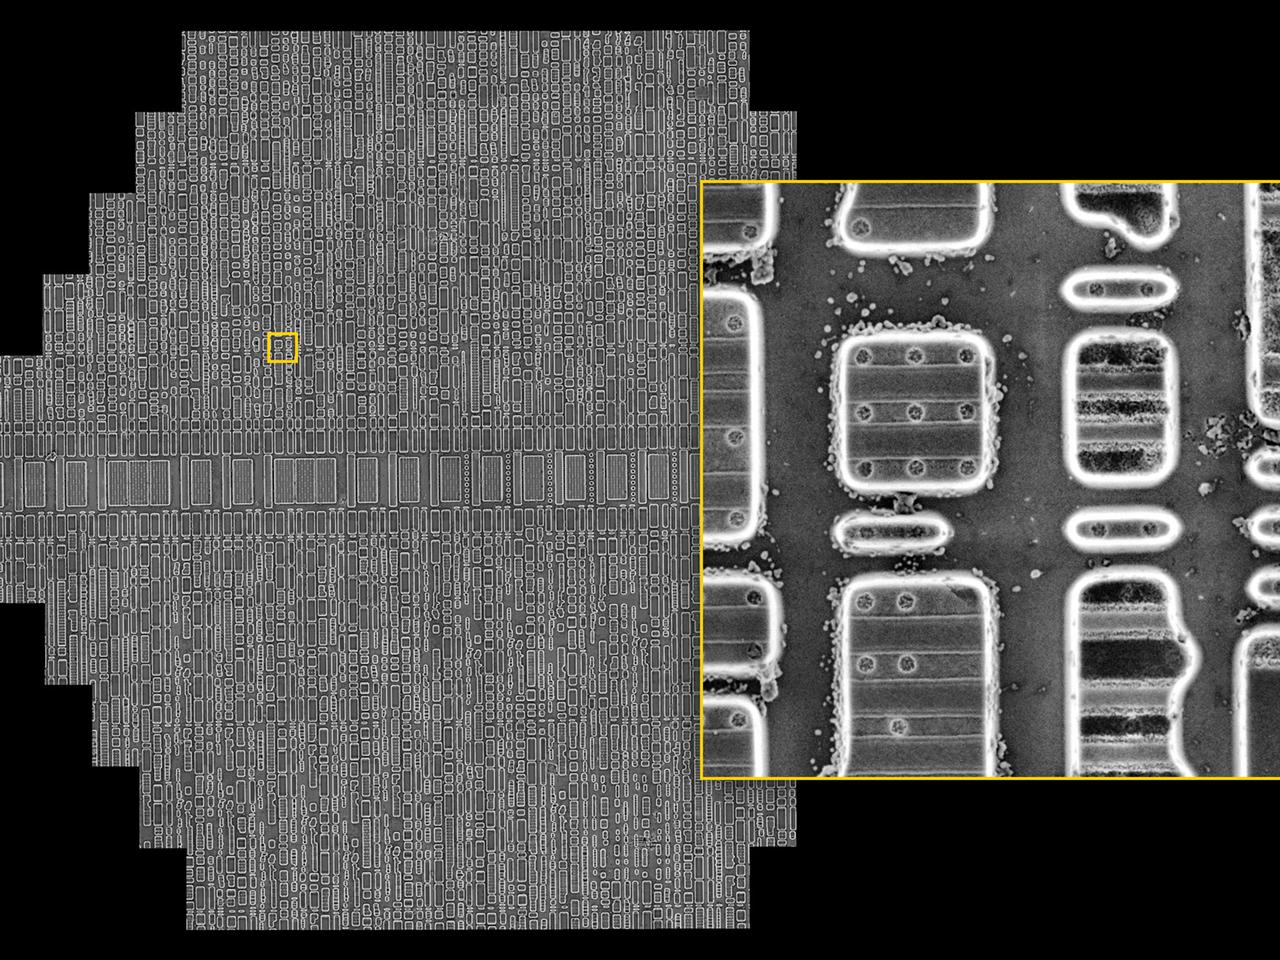 65 nmテクノロジーノード画像処理集積回路。フッ化水素酸によるエッチングでシリコン基板が剥離している。